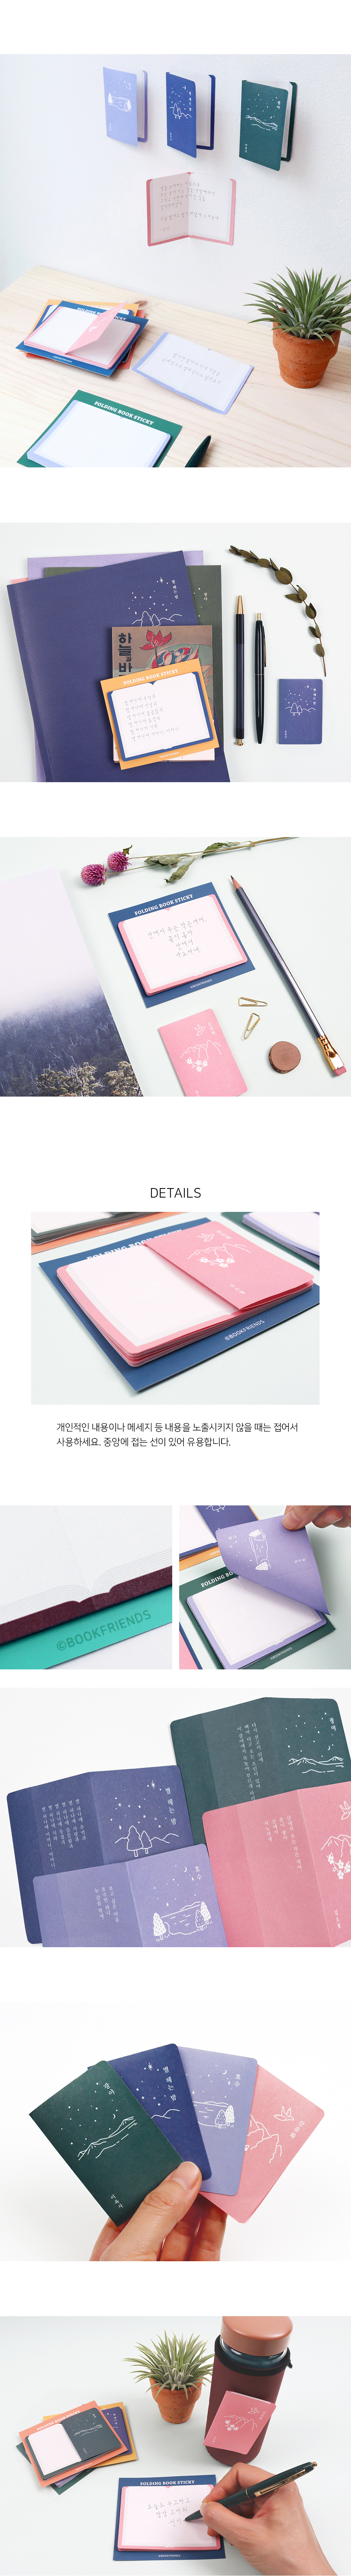 korea_folding_book_sticky_02.jpg